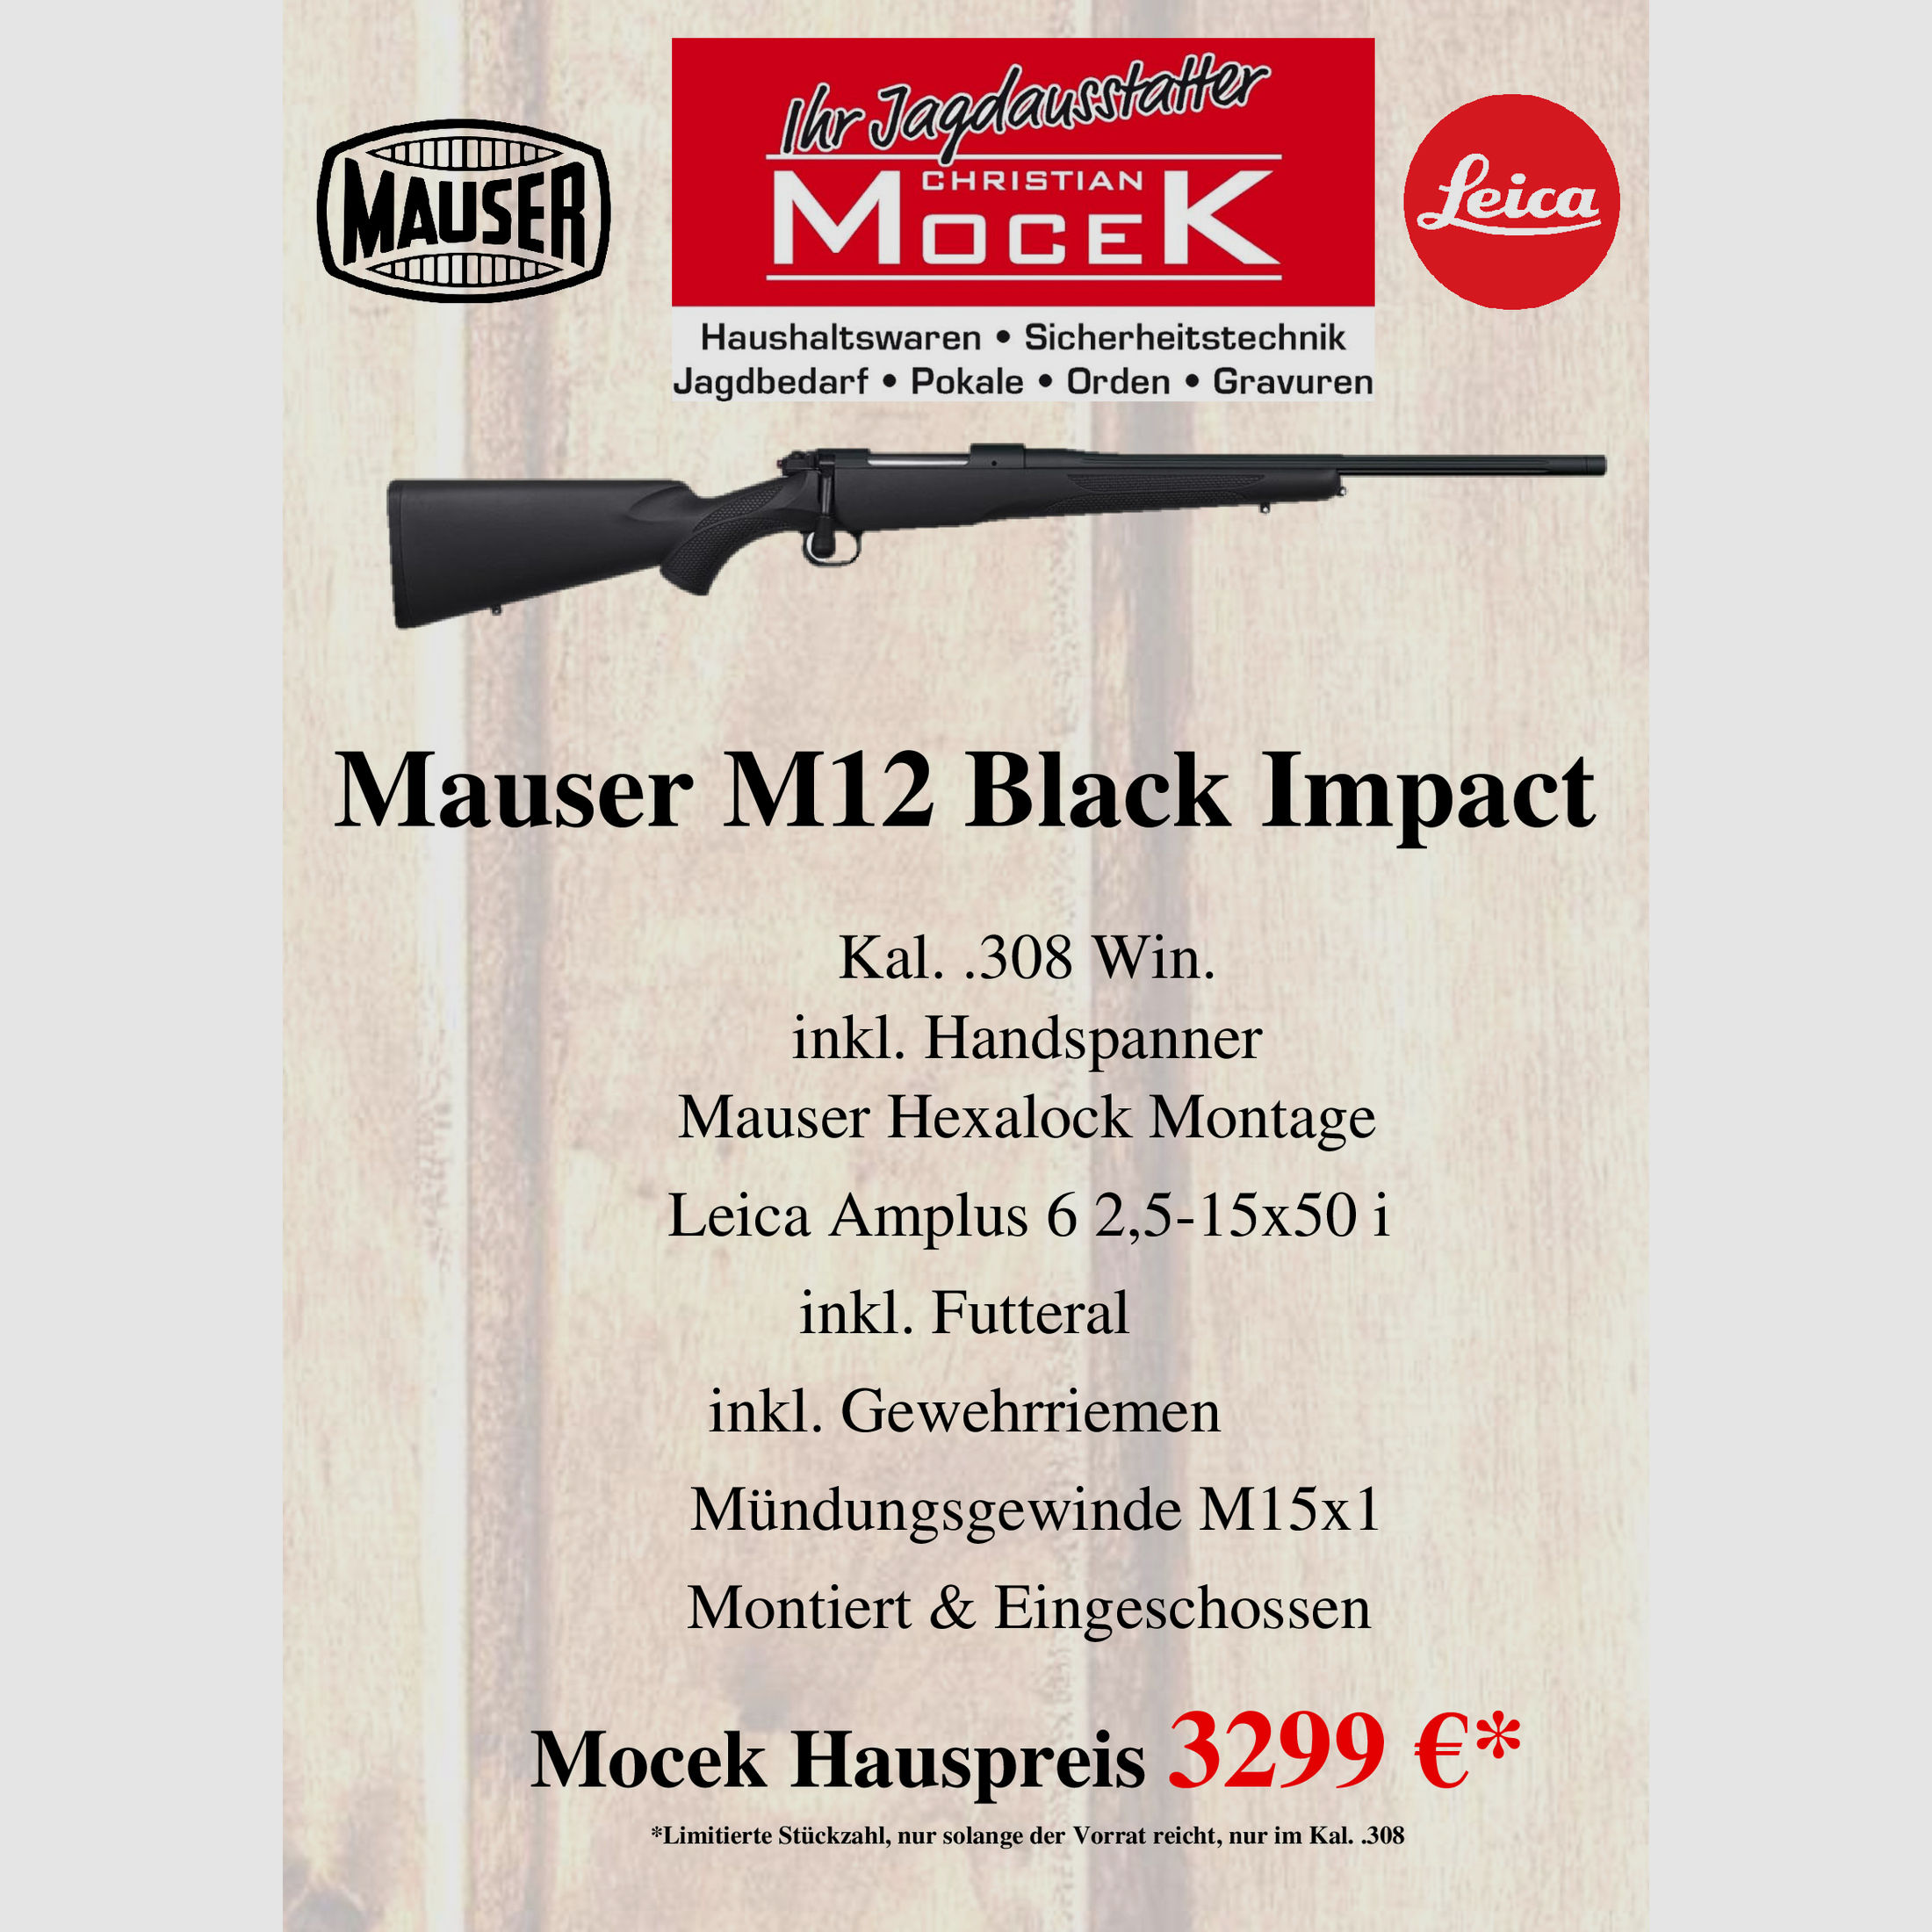 Mauser M12 Black Impact, mit Leica Amplus 6 2,5-15x50 i